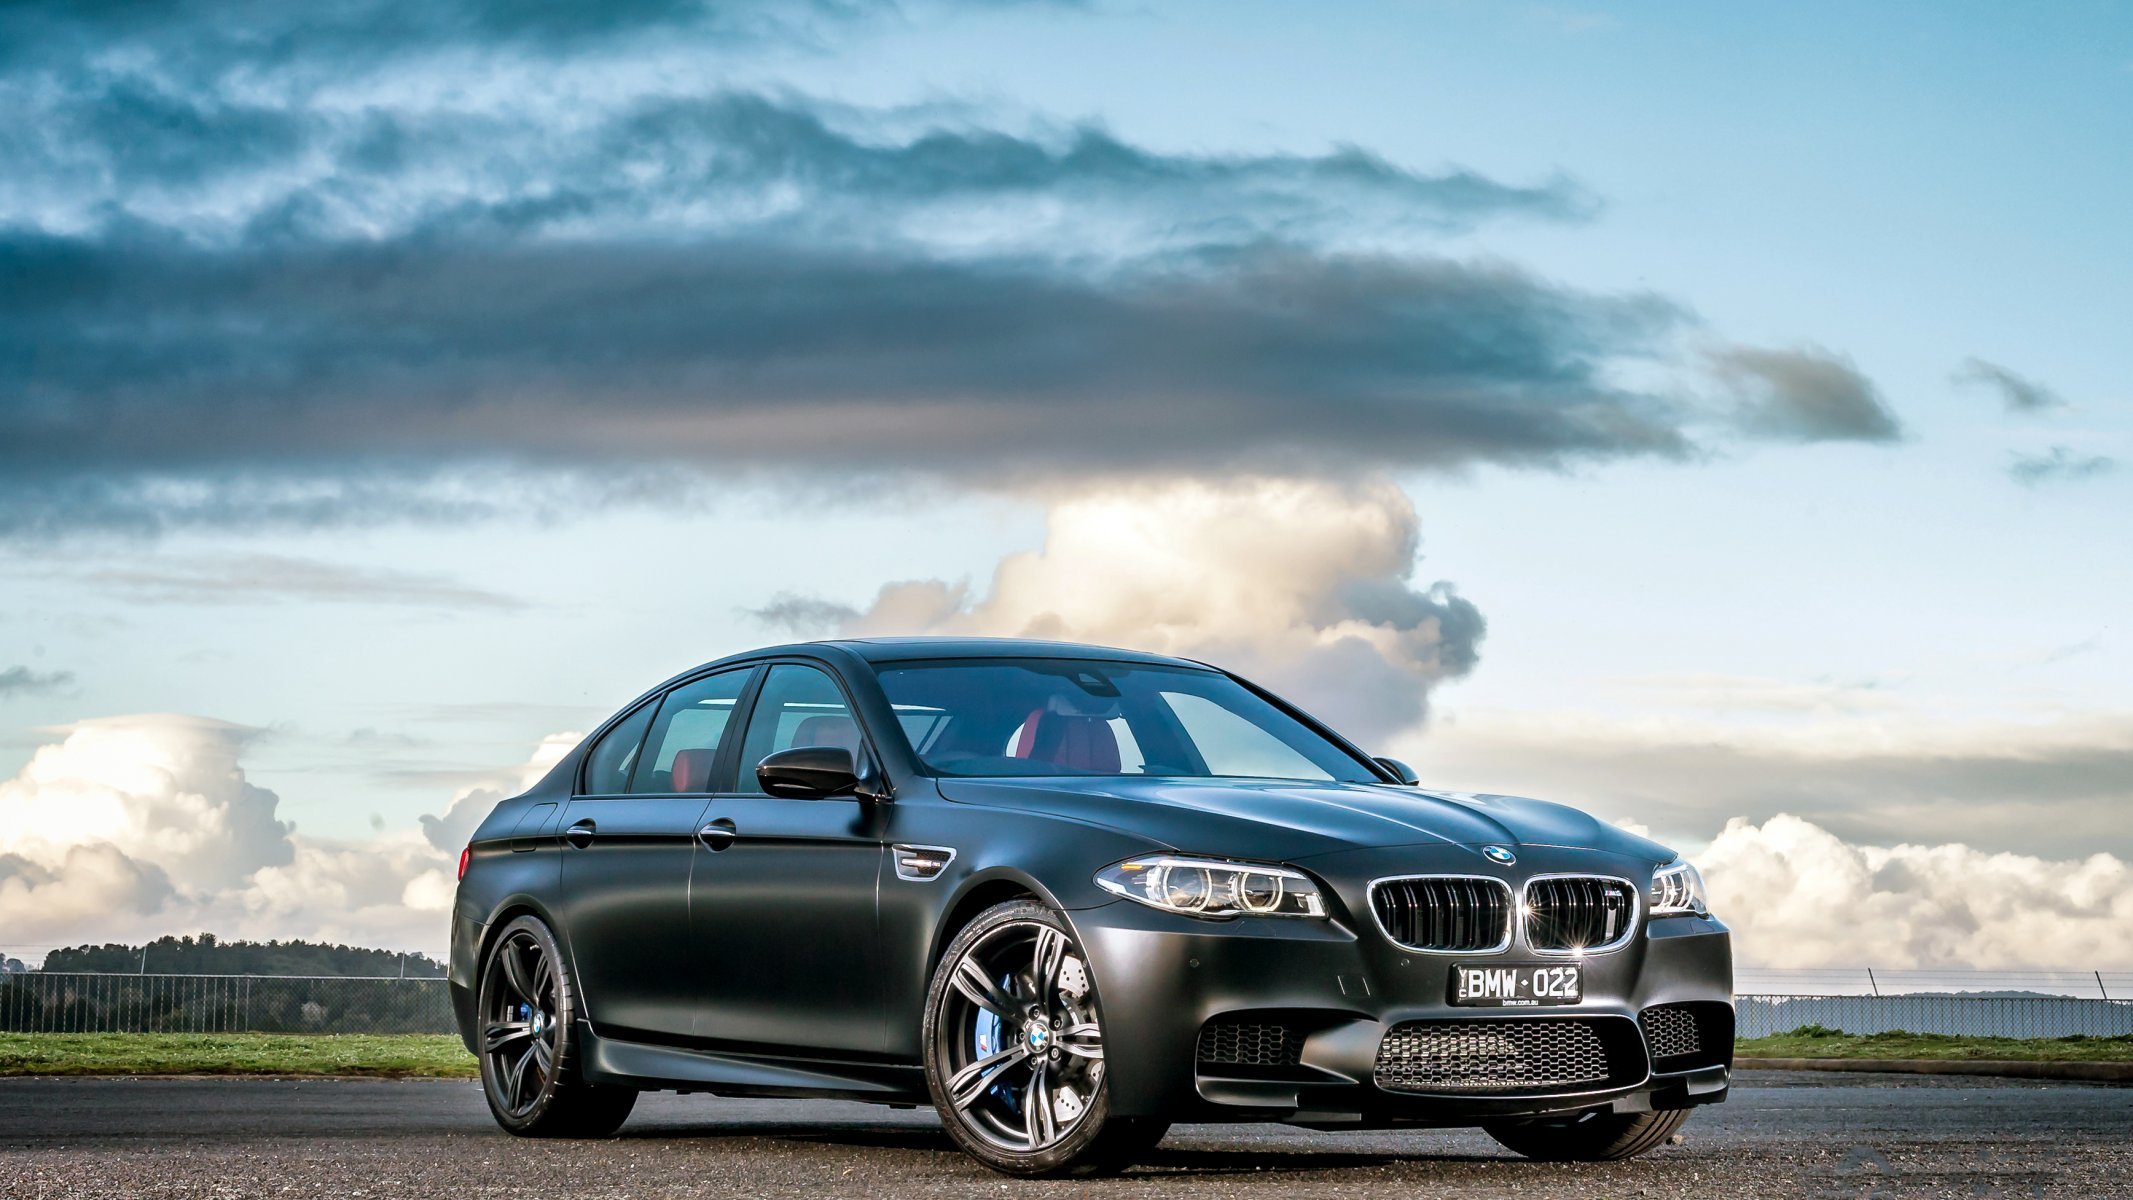 Фото м5 на обои. БМВ м5 ф10. BMW m5 f10 Black. BMW m5 f10 2015. БМВ f10 седан.